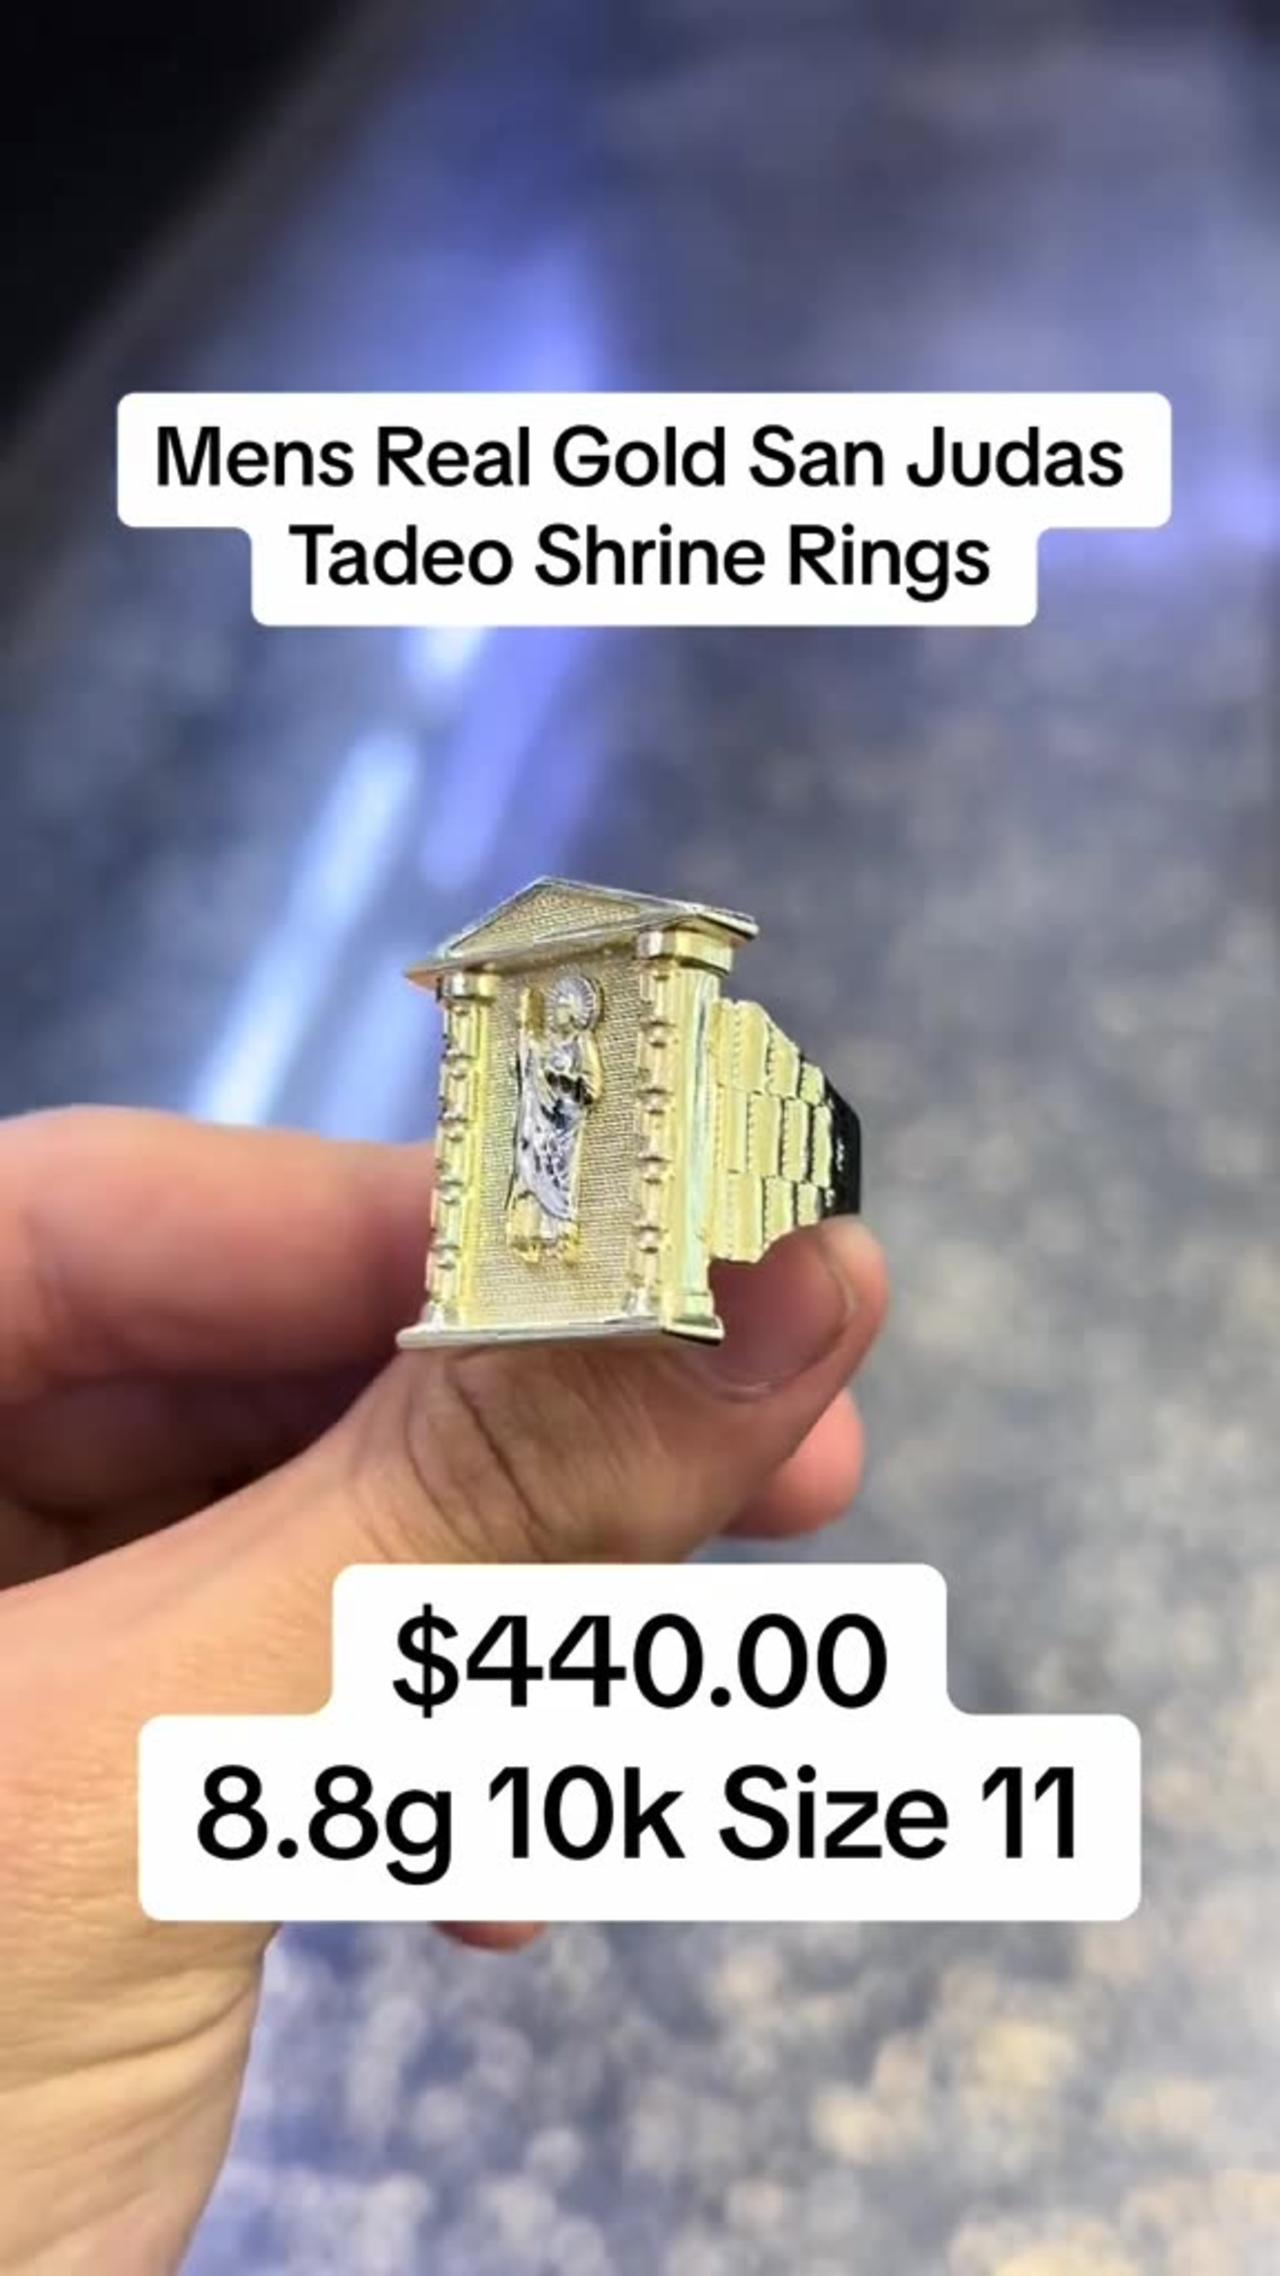 Men's Real Gold San Judas Taddeo Shrine Rings